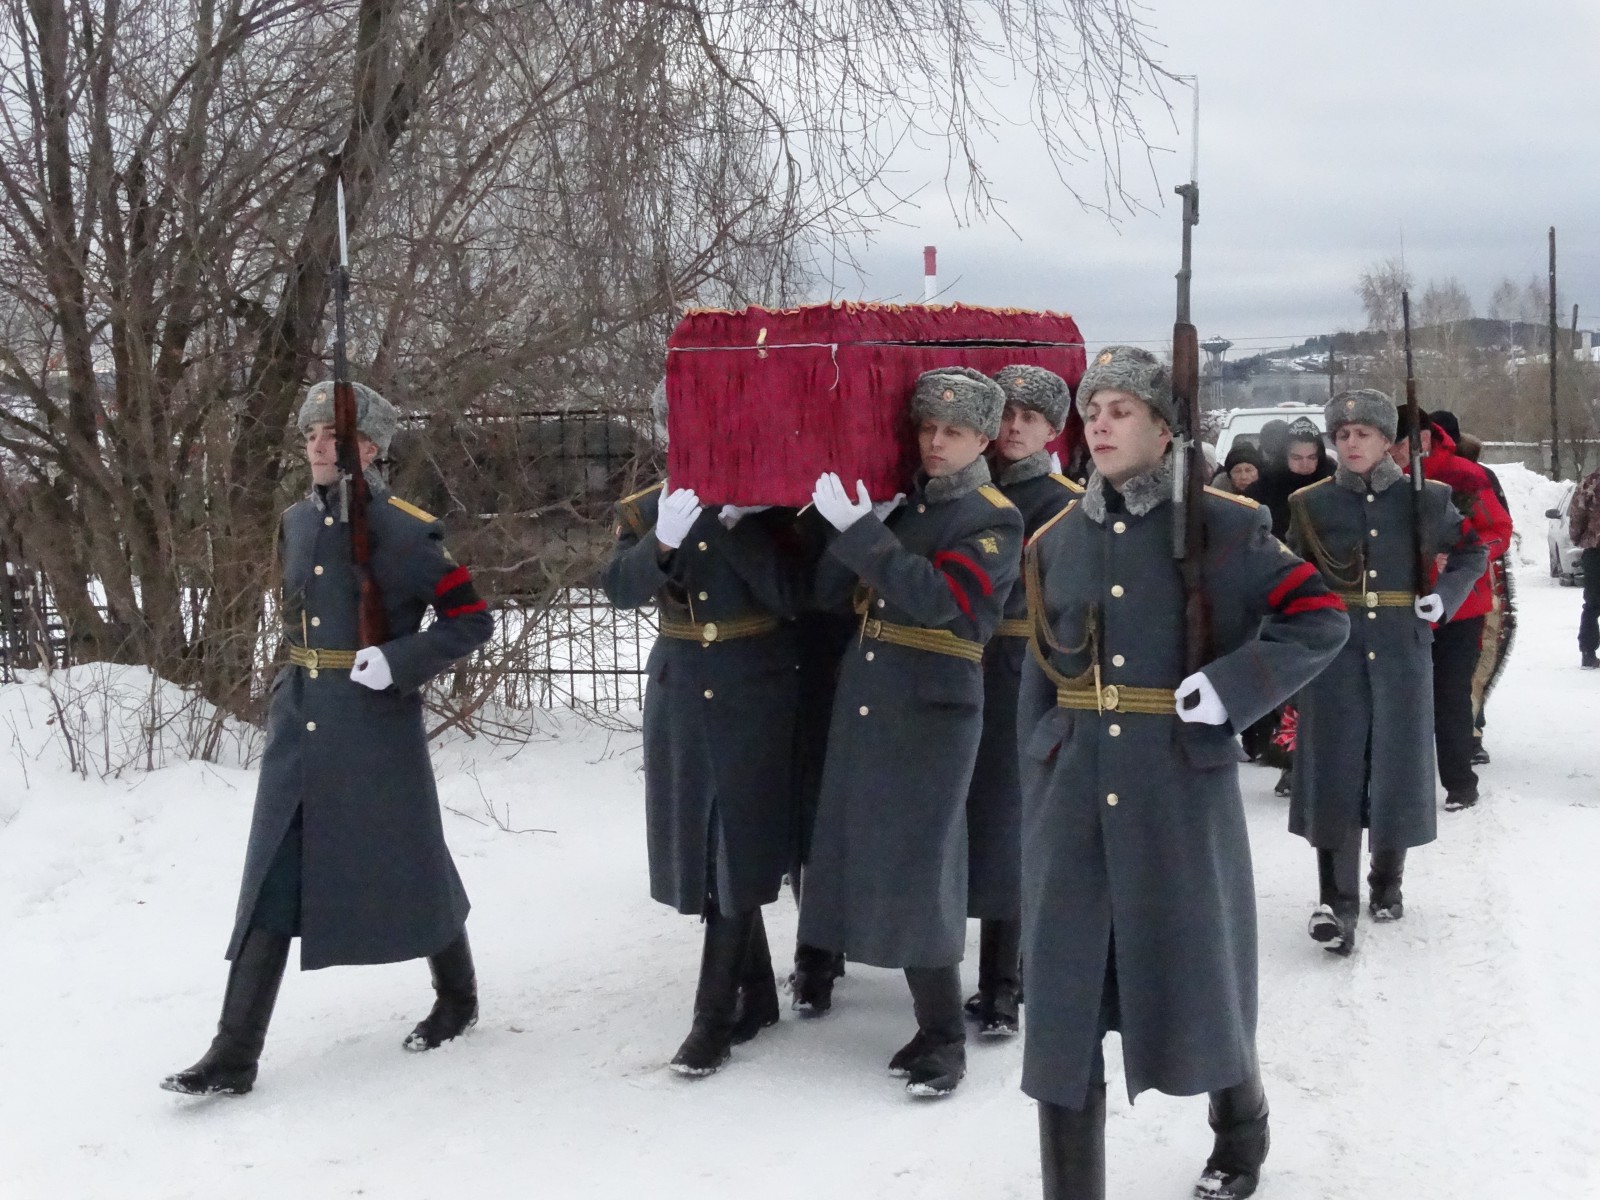 Роман Рудей погиб ещё в ноябре. Похоронили бойца только сейчас. Фото Александра Зиновьева